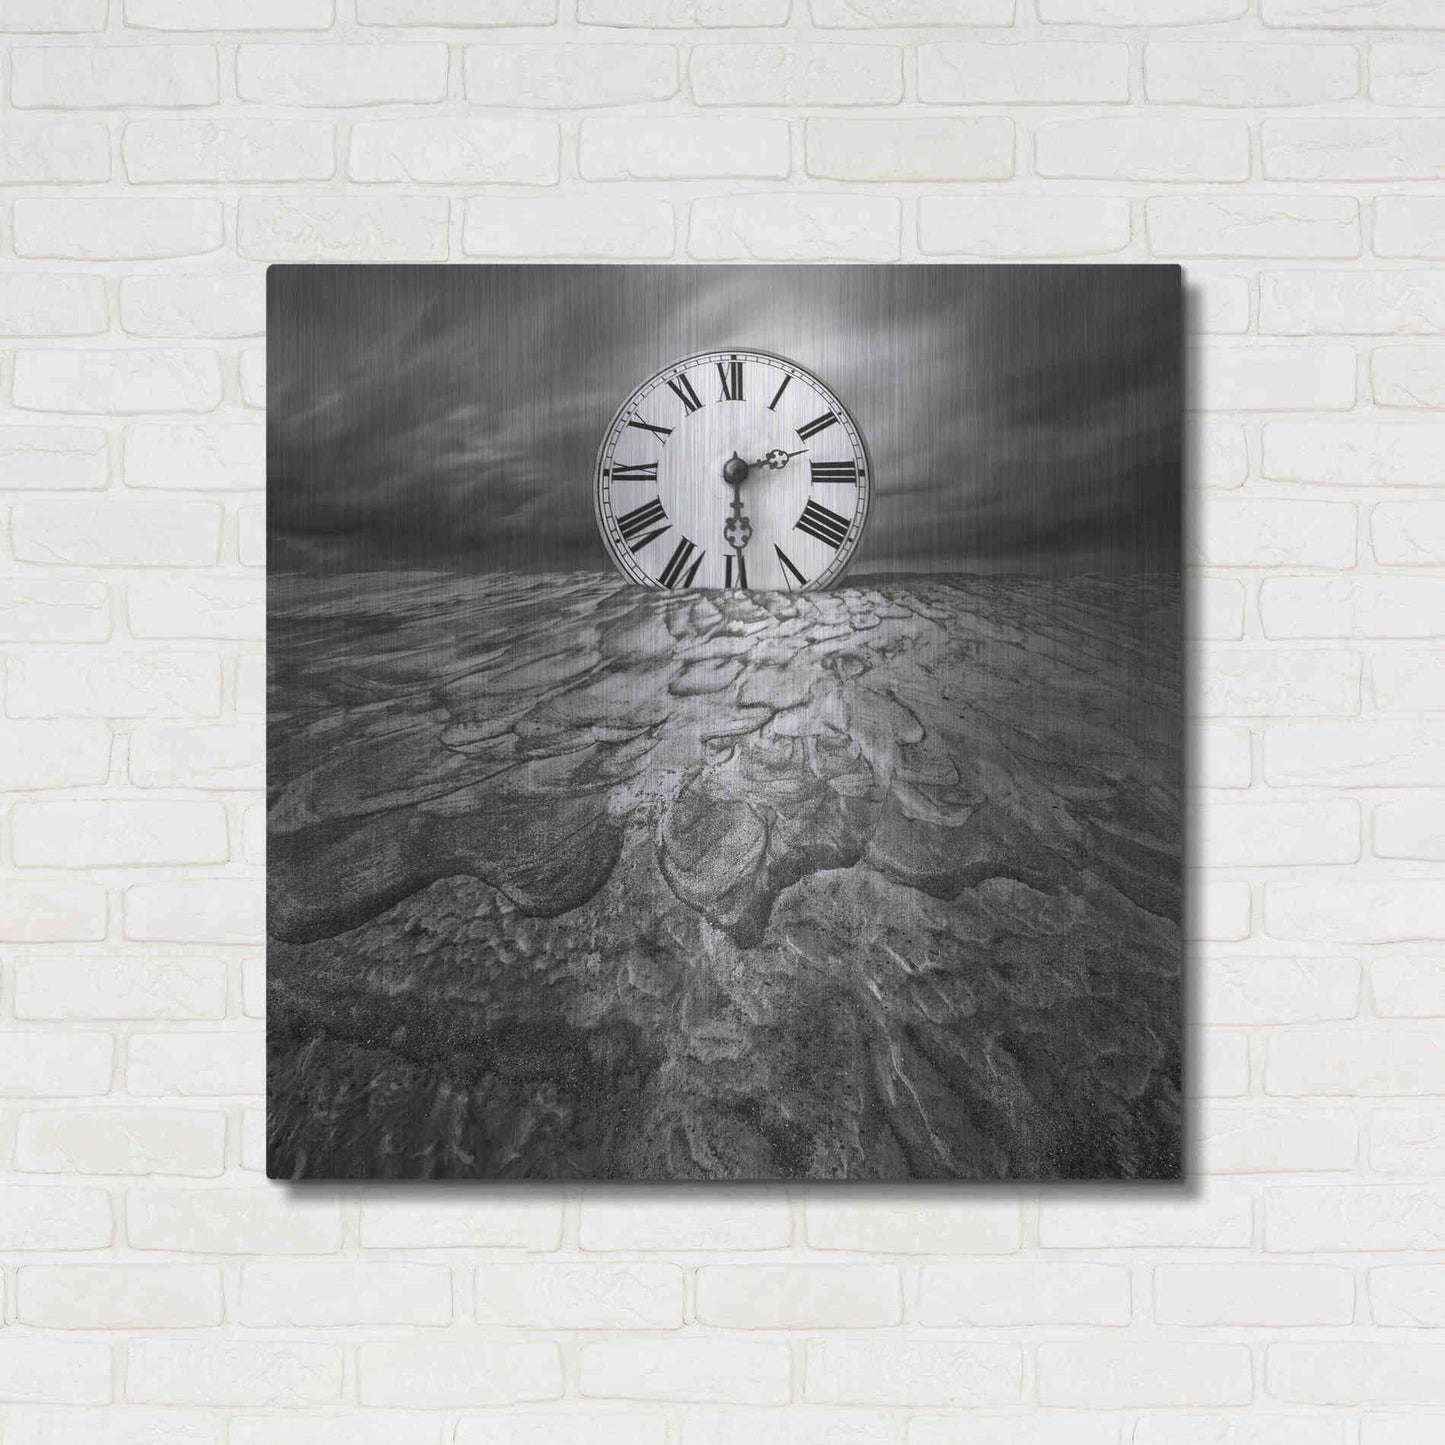 Luxe Metal Art 'Clockwork' by Dariusz Klimczak, Metal Wall Art,36x36